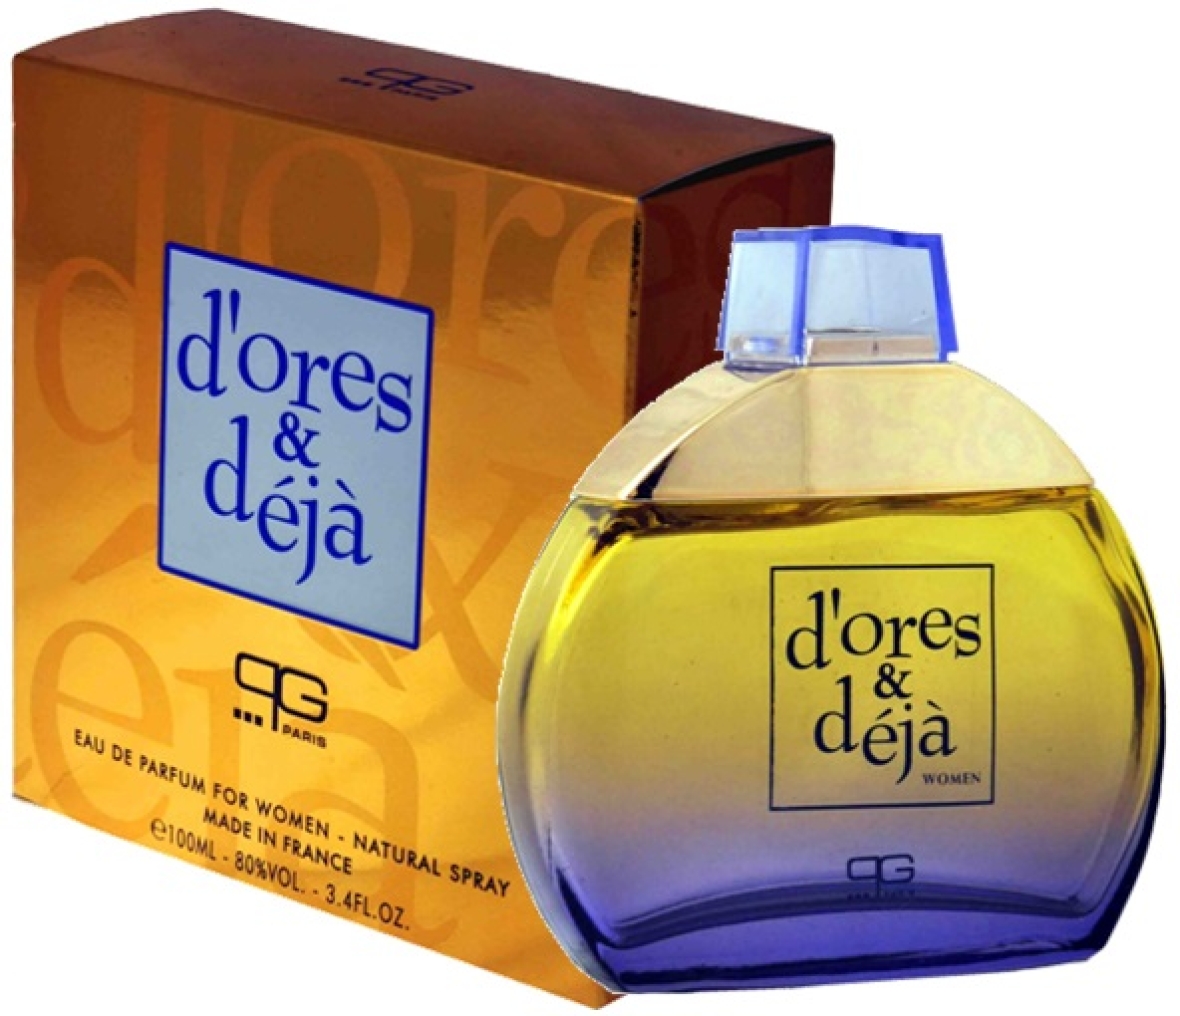 Notre gamme de parfums F.4 D'ORES & DEJA Financer voyage scolaire